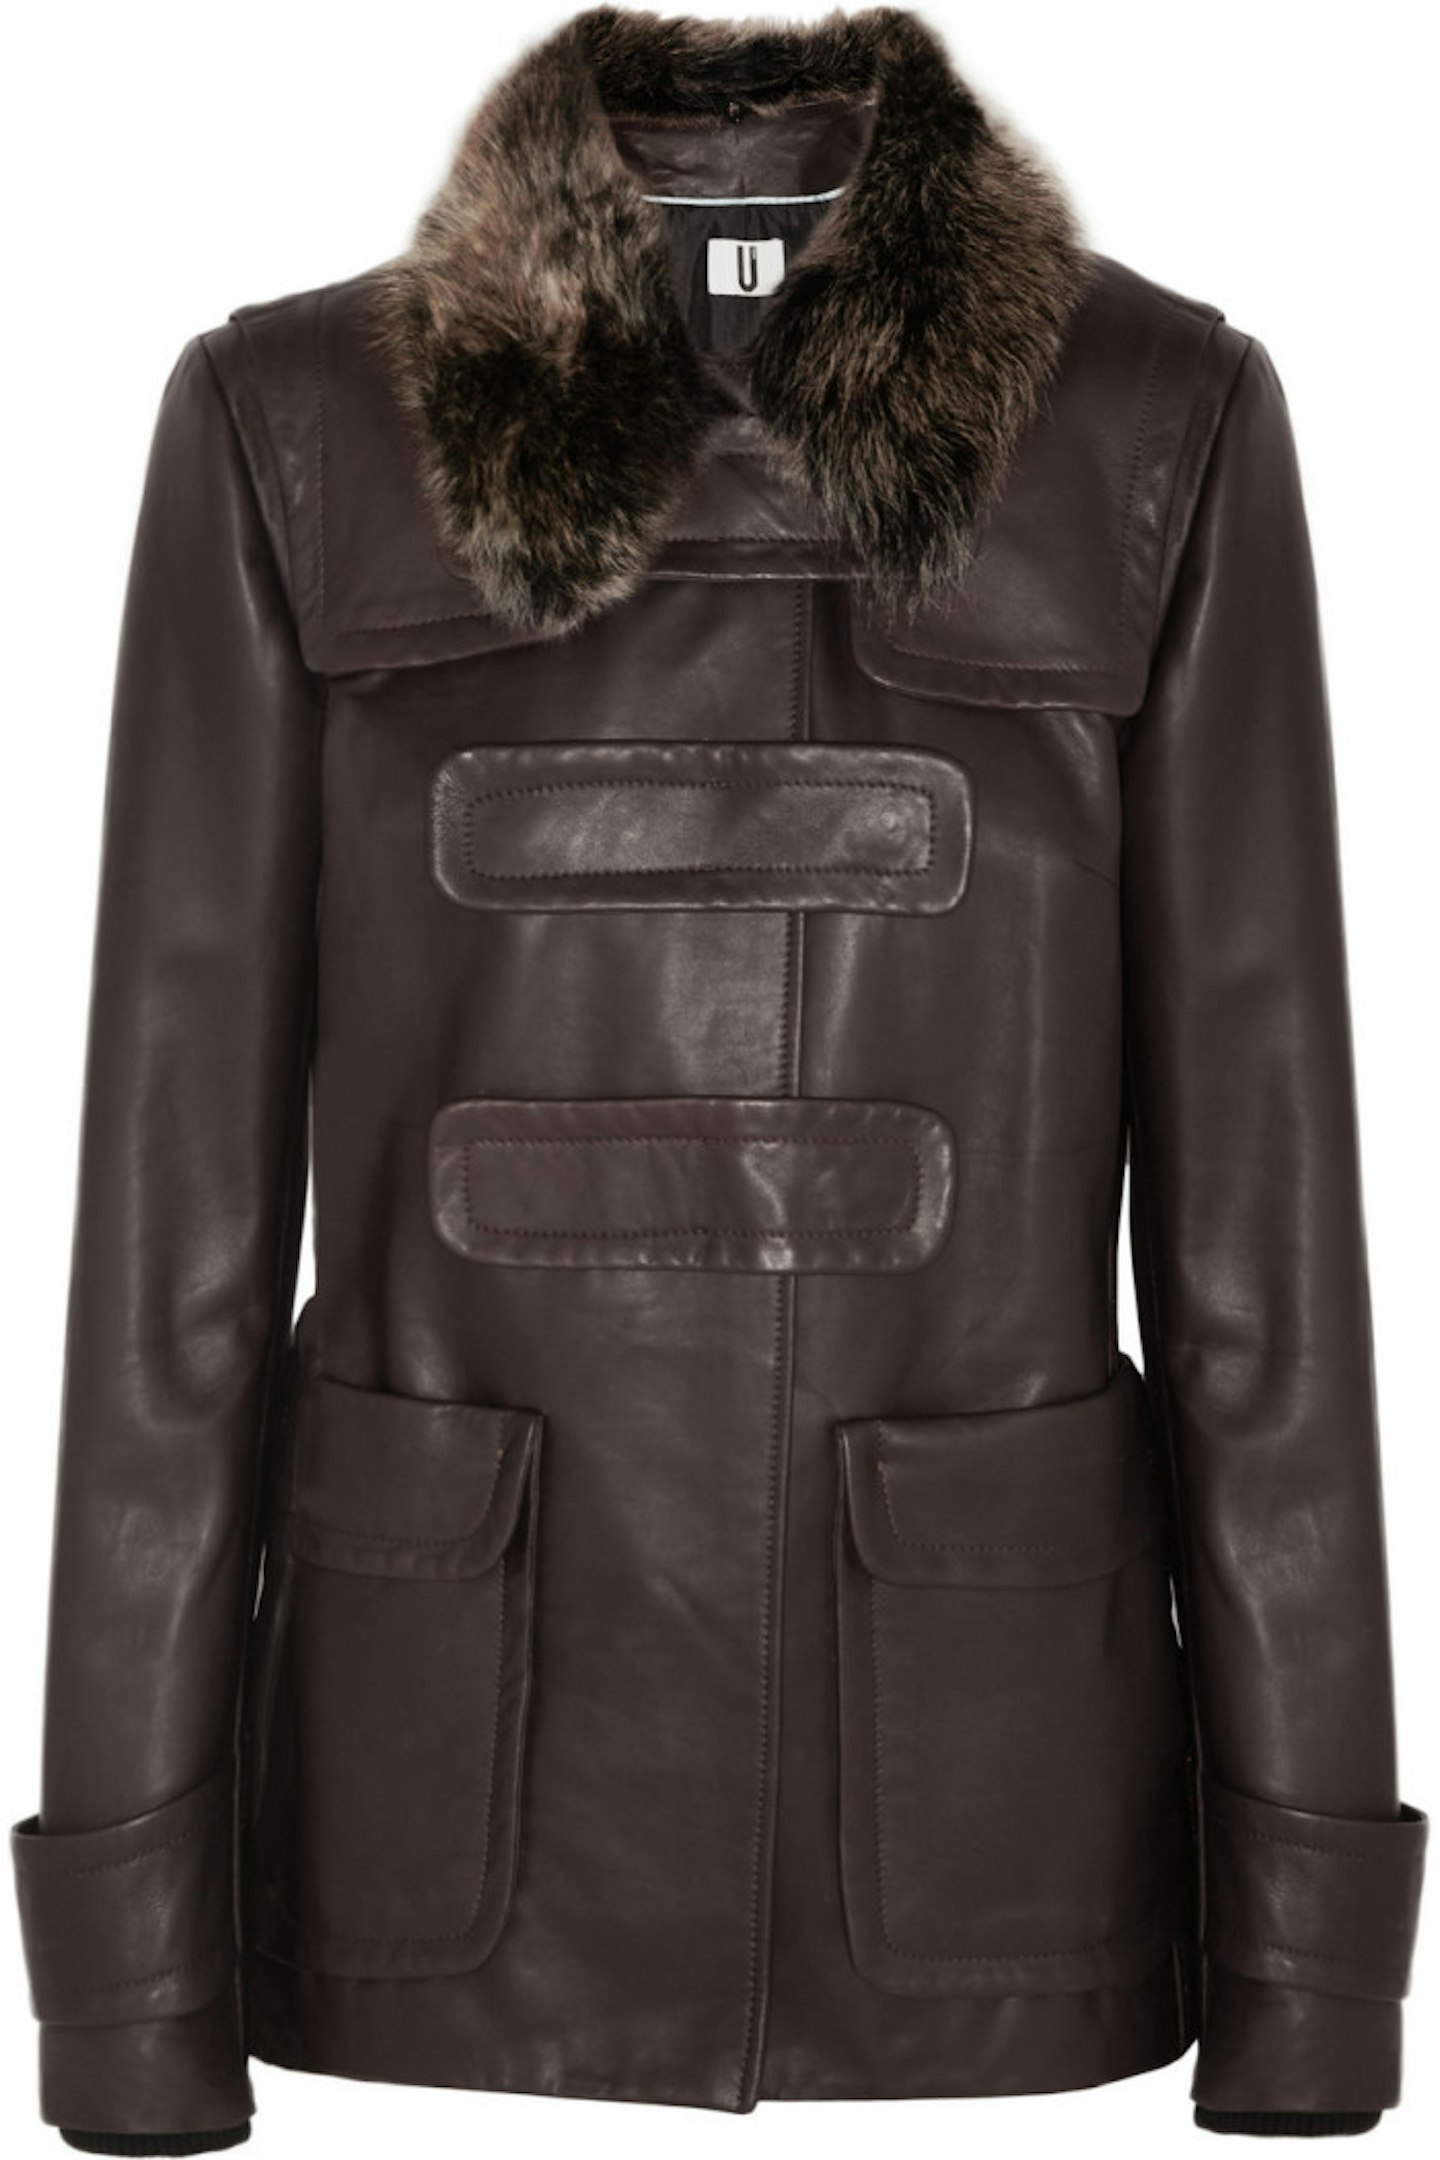 Topshop Unique Inverness Leather Jacket, £575.00